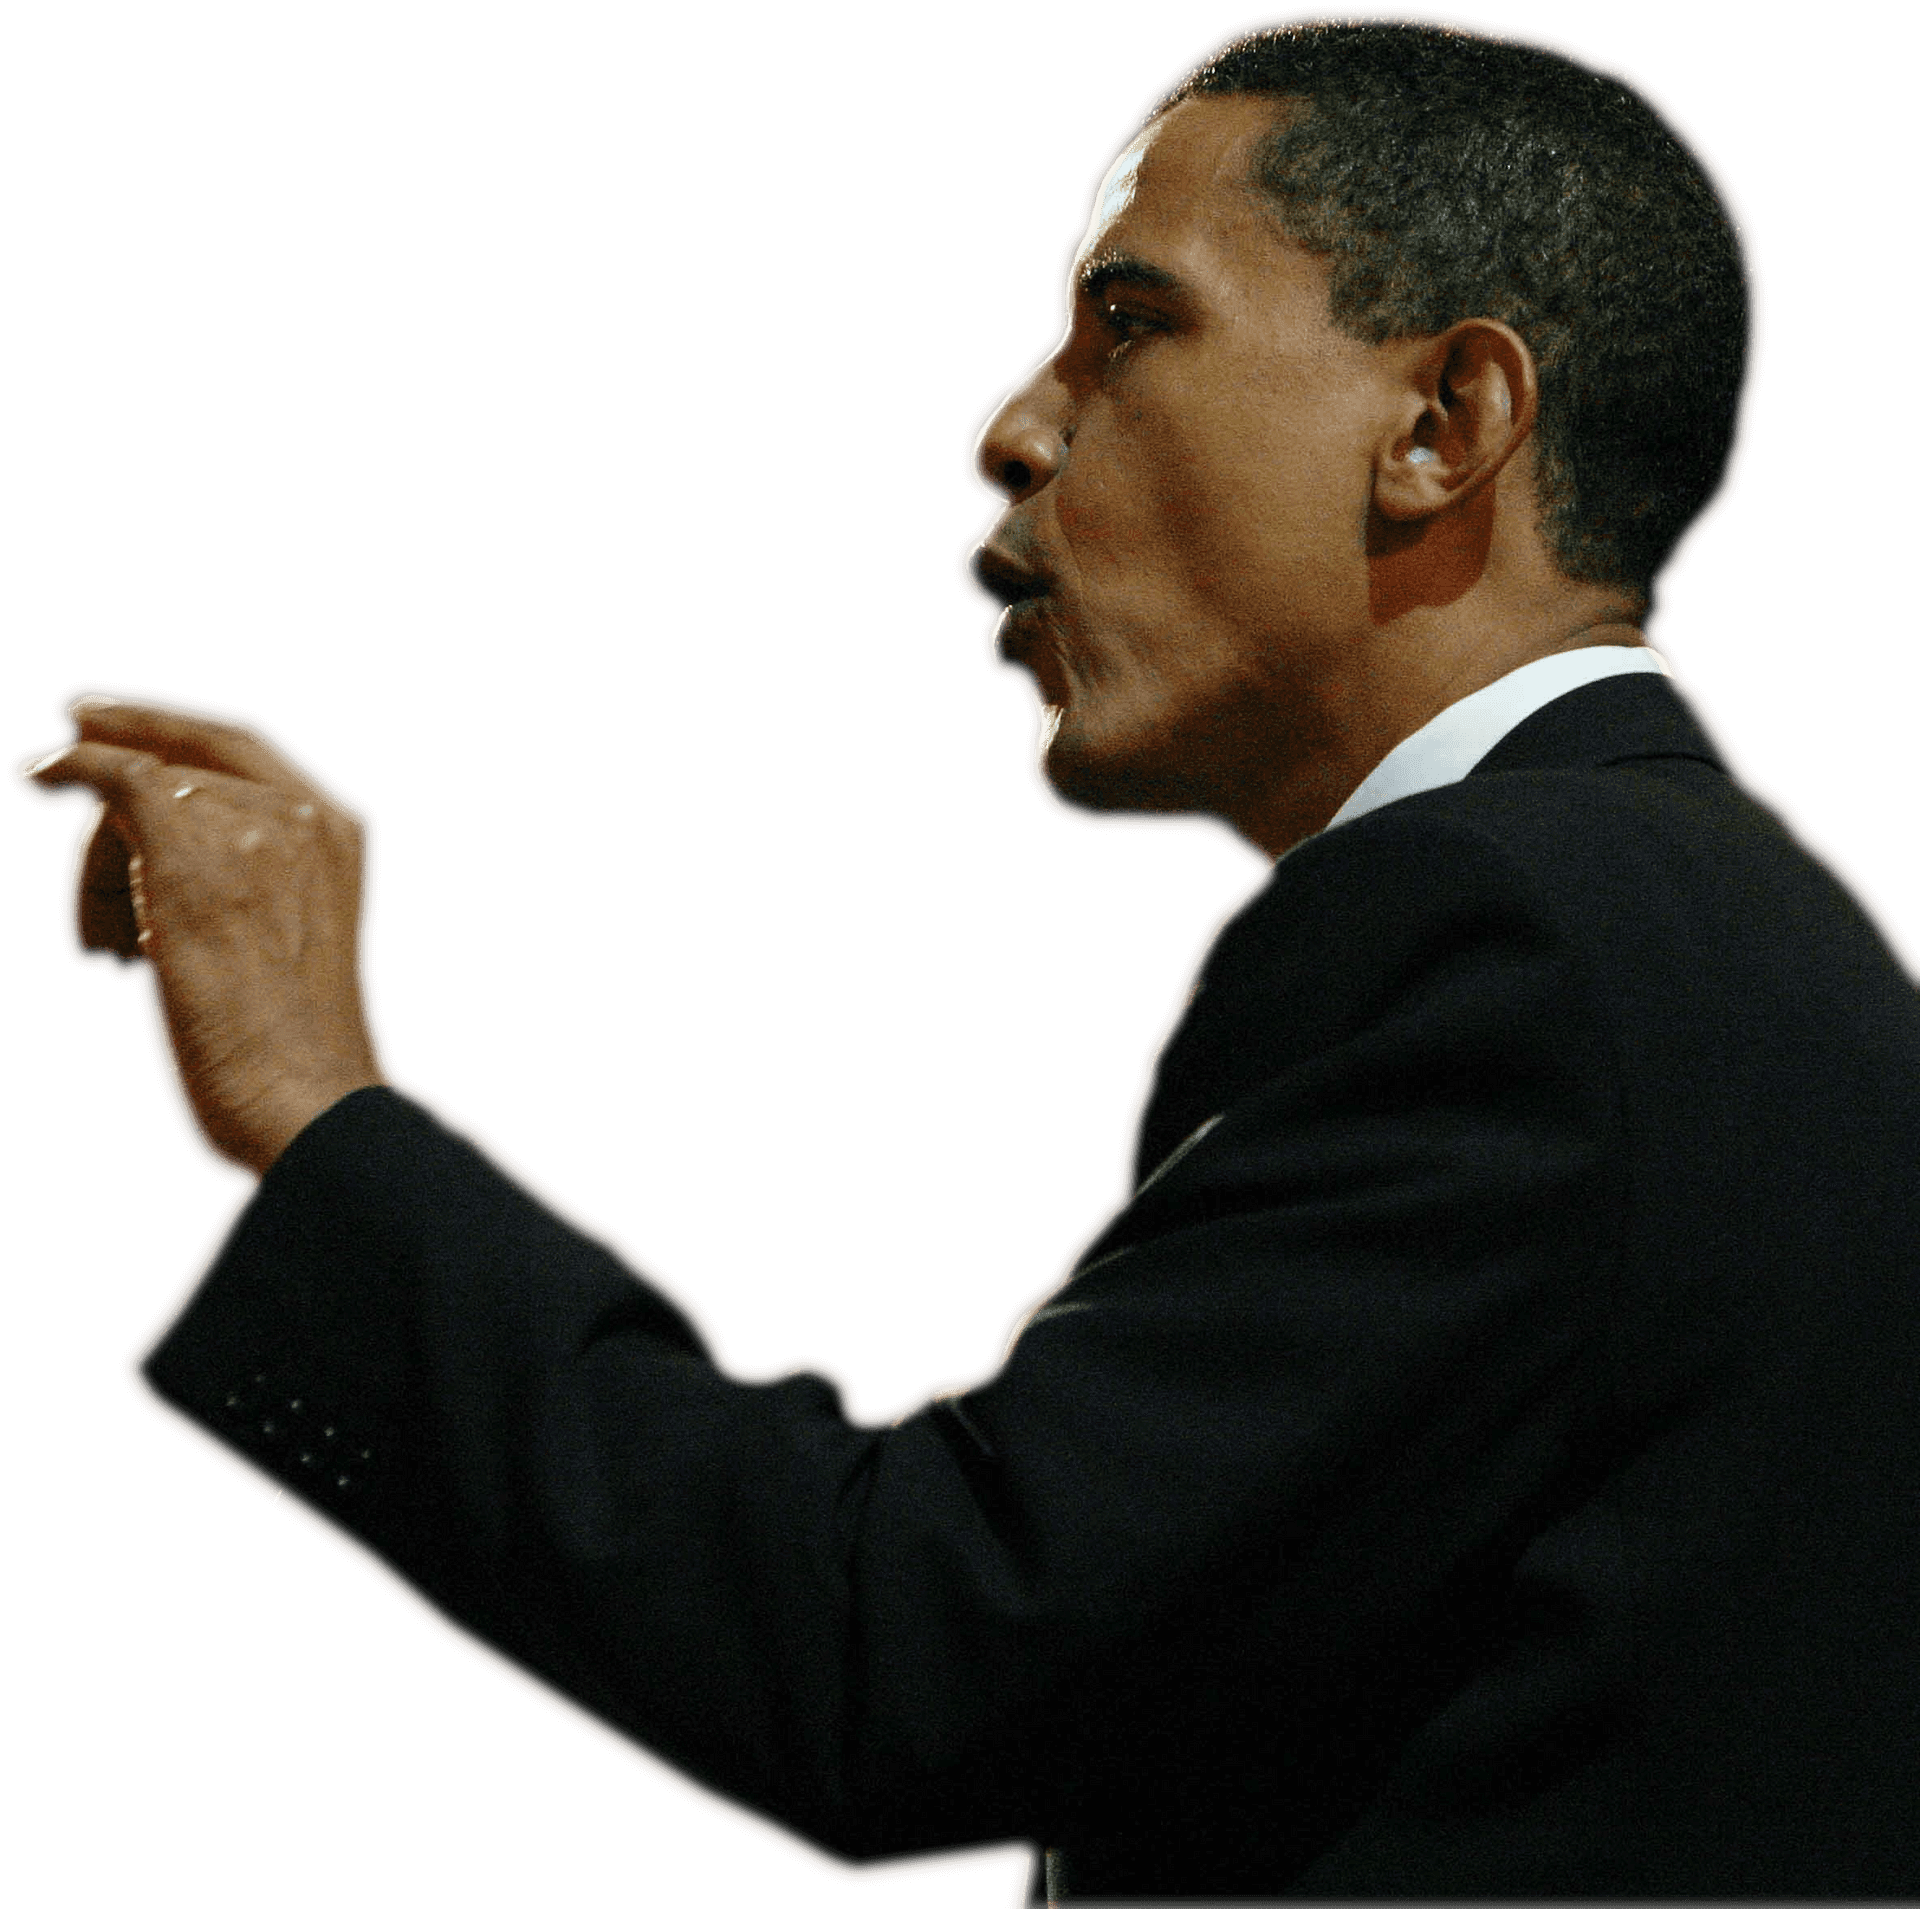 Barack Obama Speaking Gesture PNG